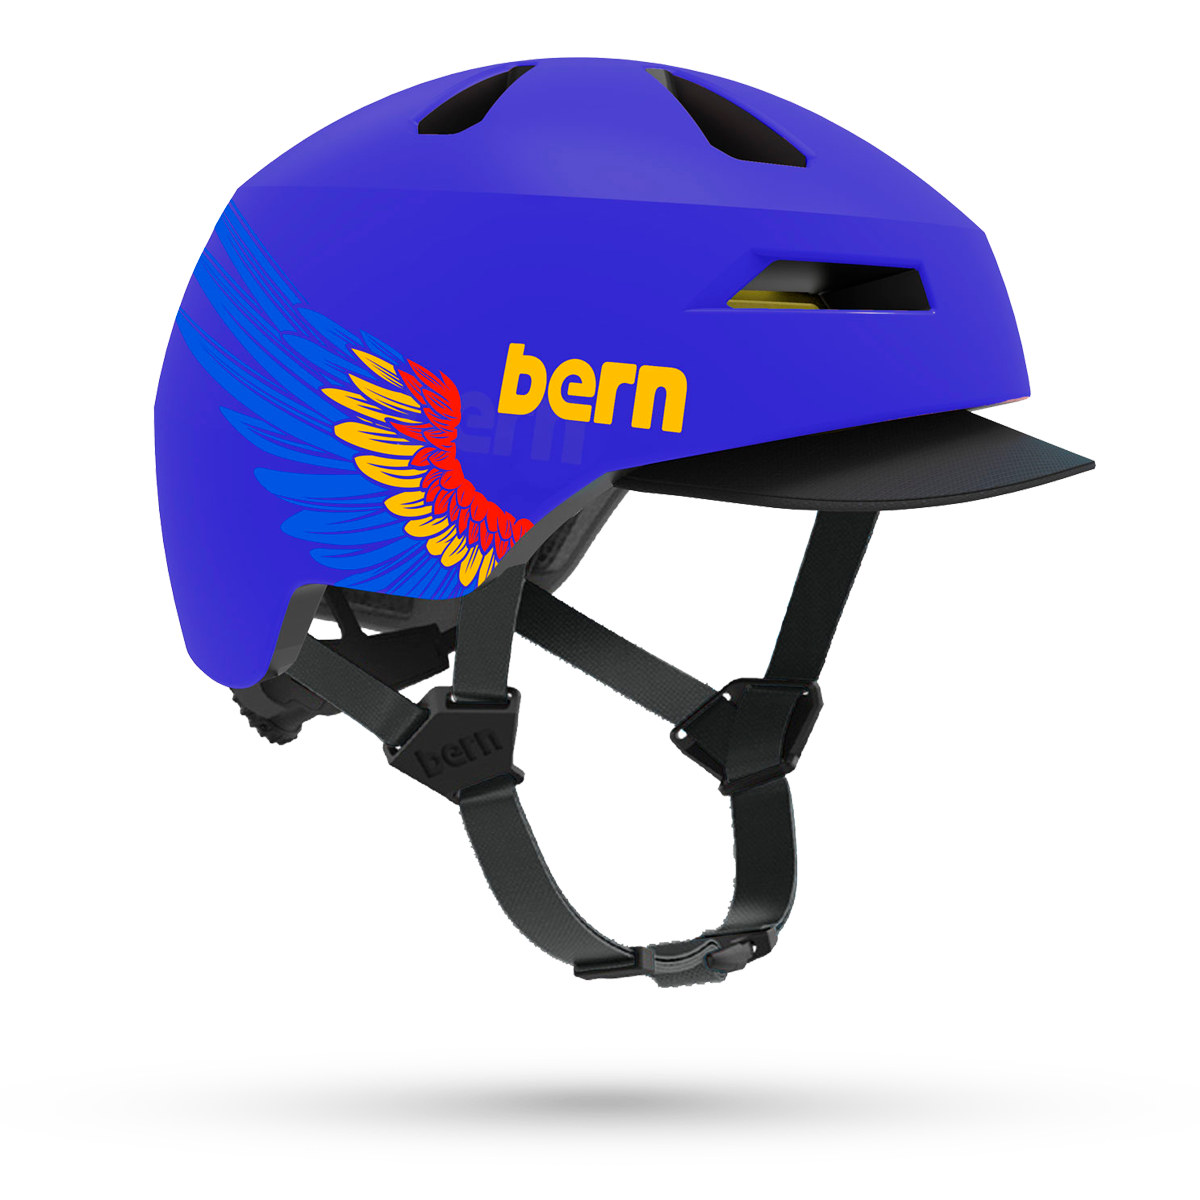 Brentwood Jr. Bike Helmet